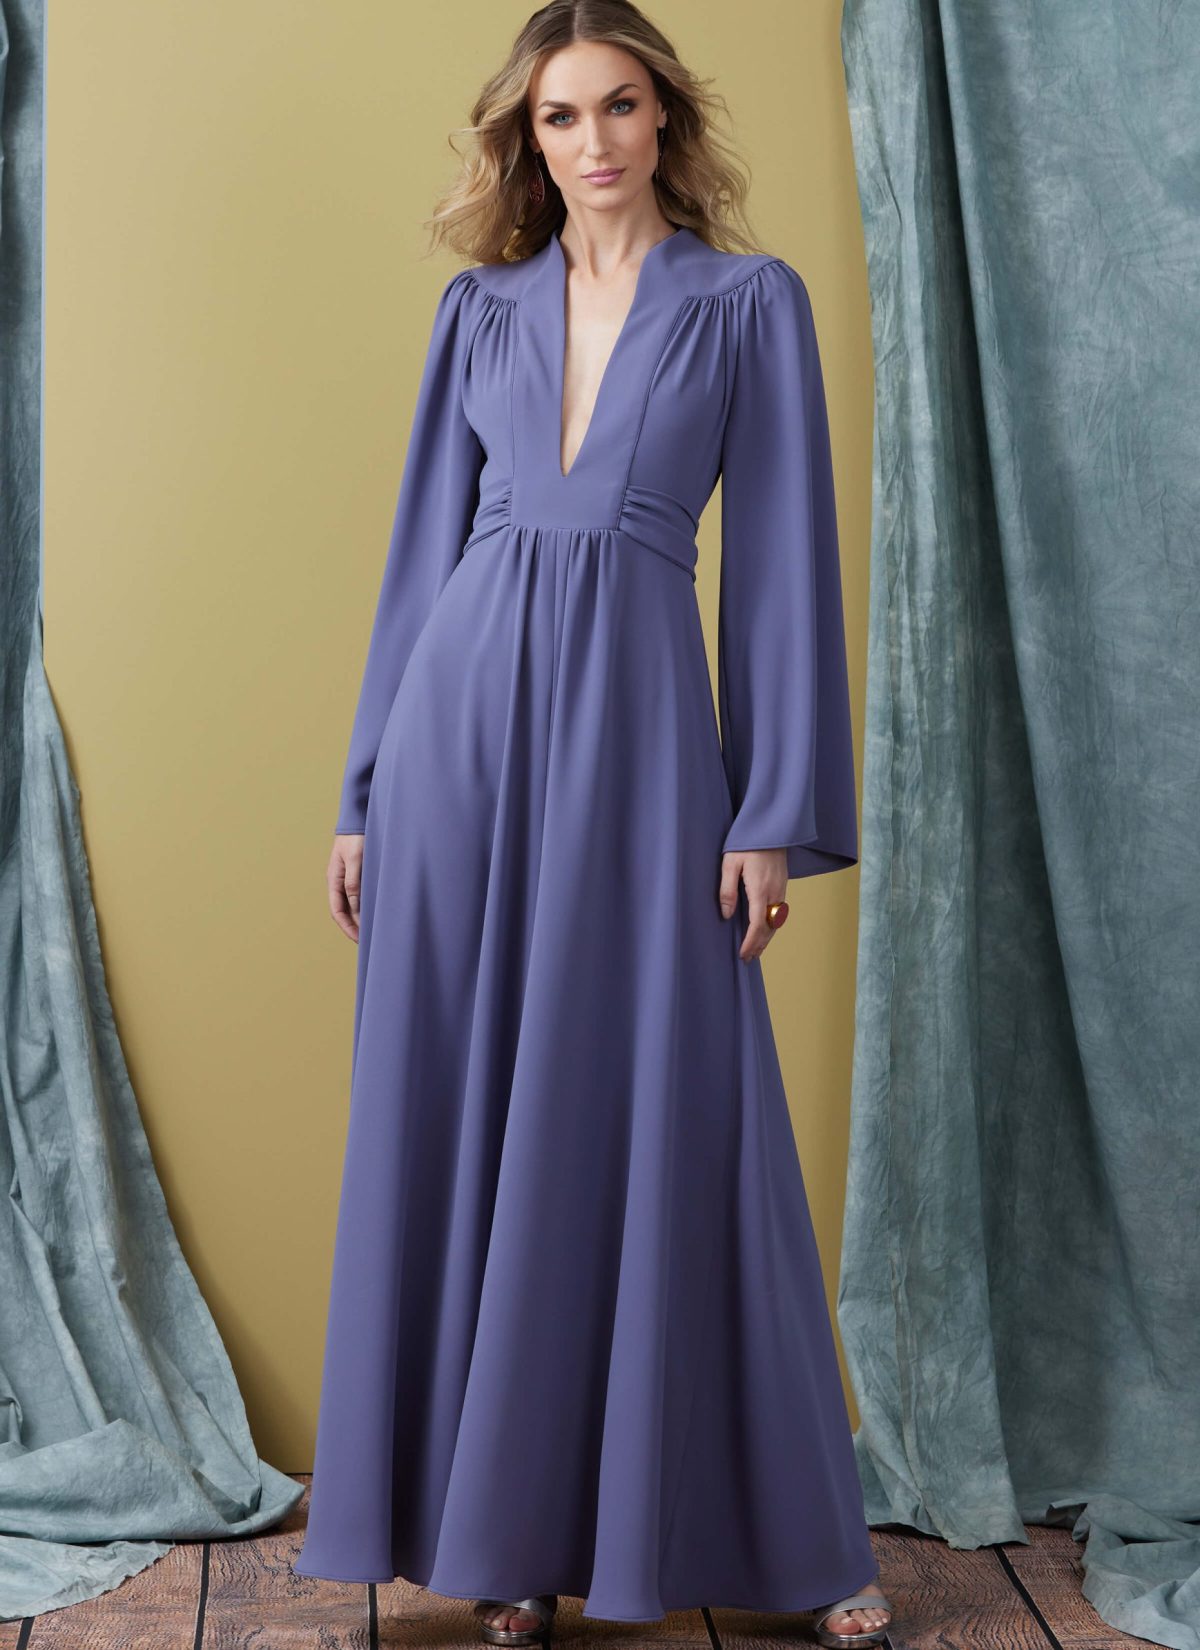 Vogue Patterns V1921 Misses' Dress in Two Lengths